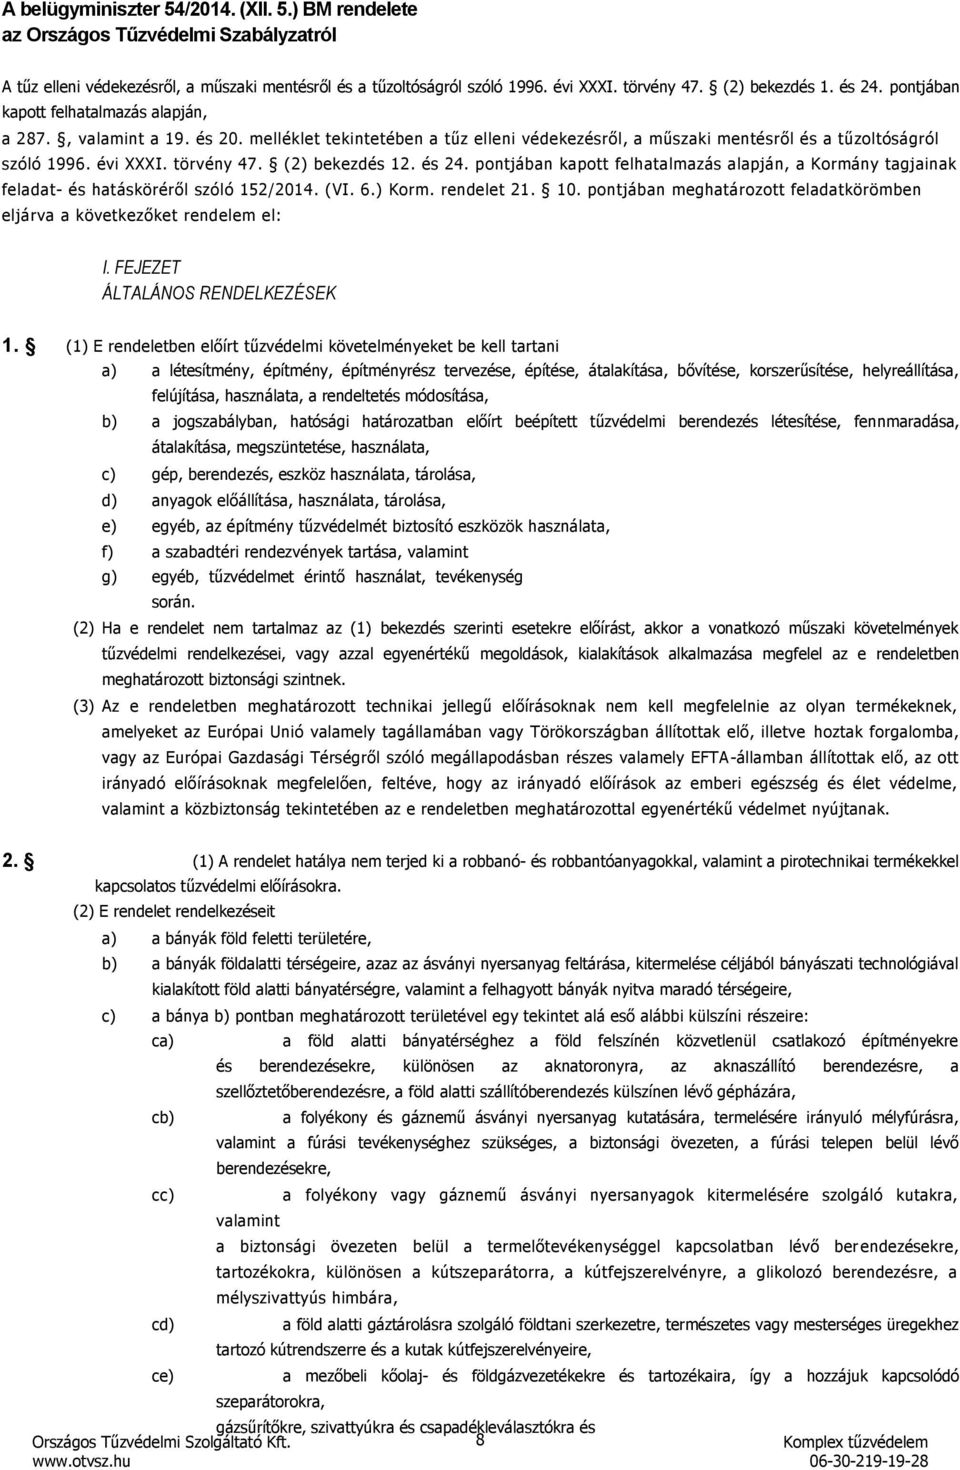 évi XXXI. törvény 47. (2) bekezdés 12. és 24. pontjában kapott felhatalmazás alapján, a Kormány tagjainak feladat és hatásköréről szóló 152/2014. (VI. 6.) Korm. rendelet 21. 10.